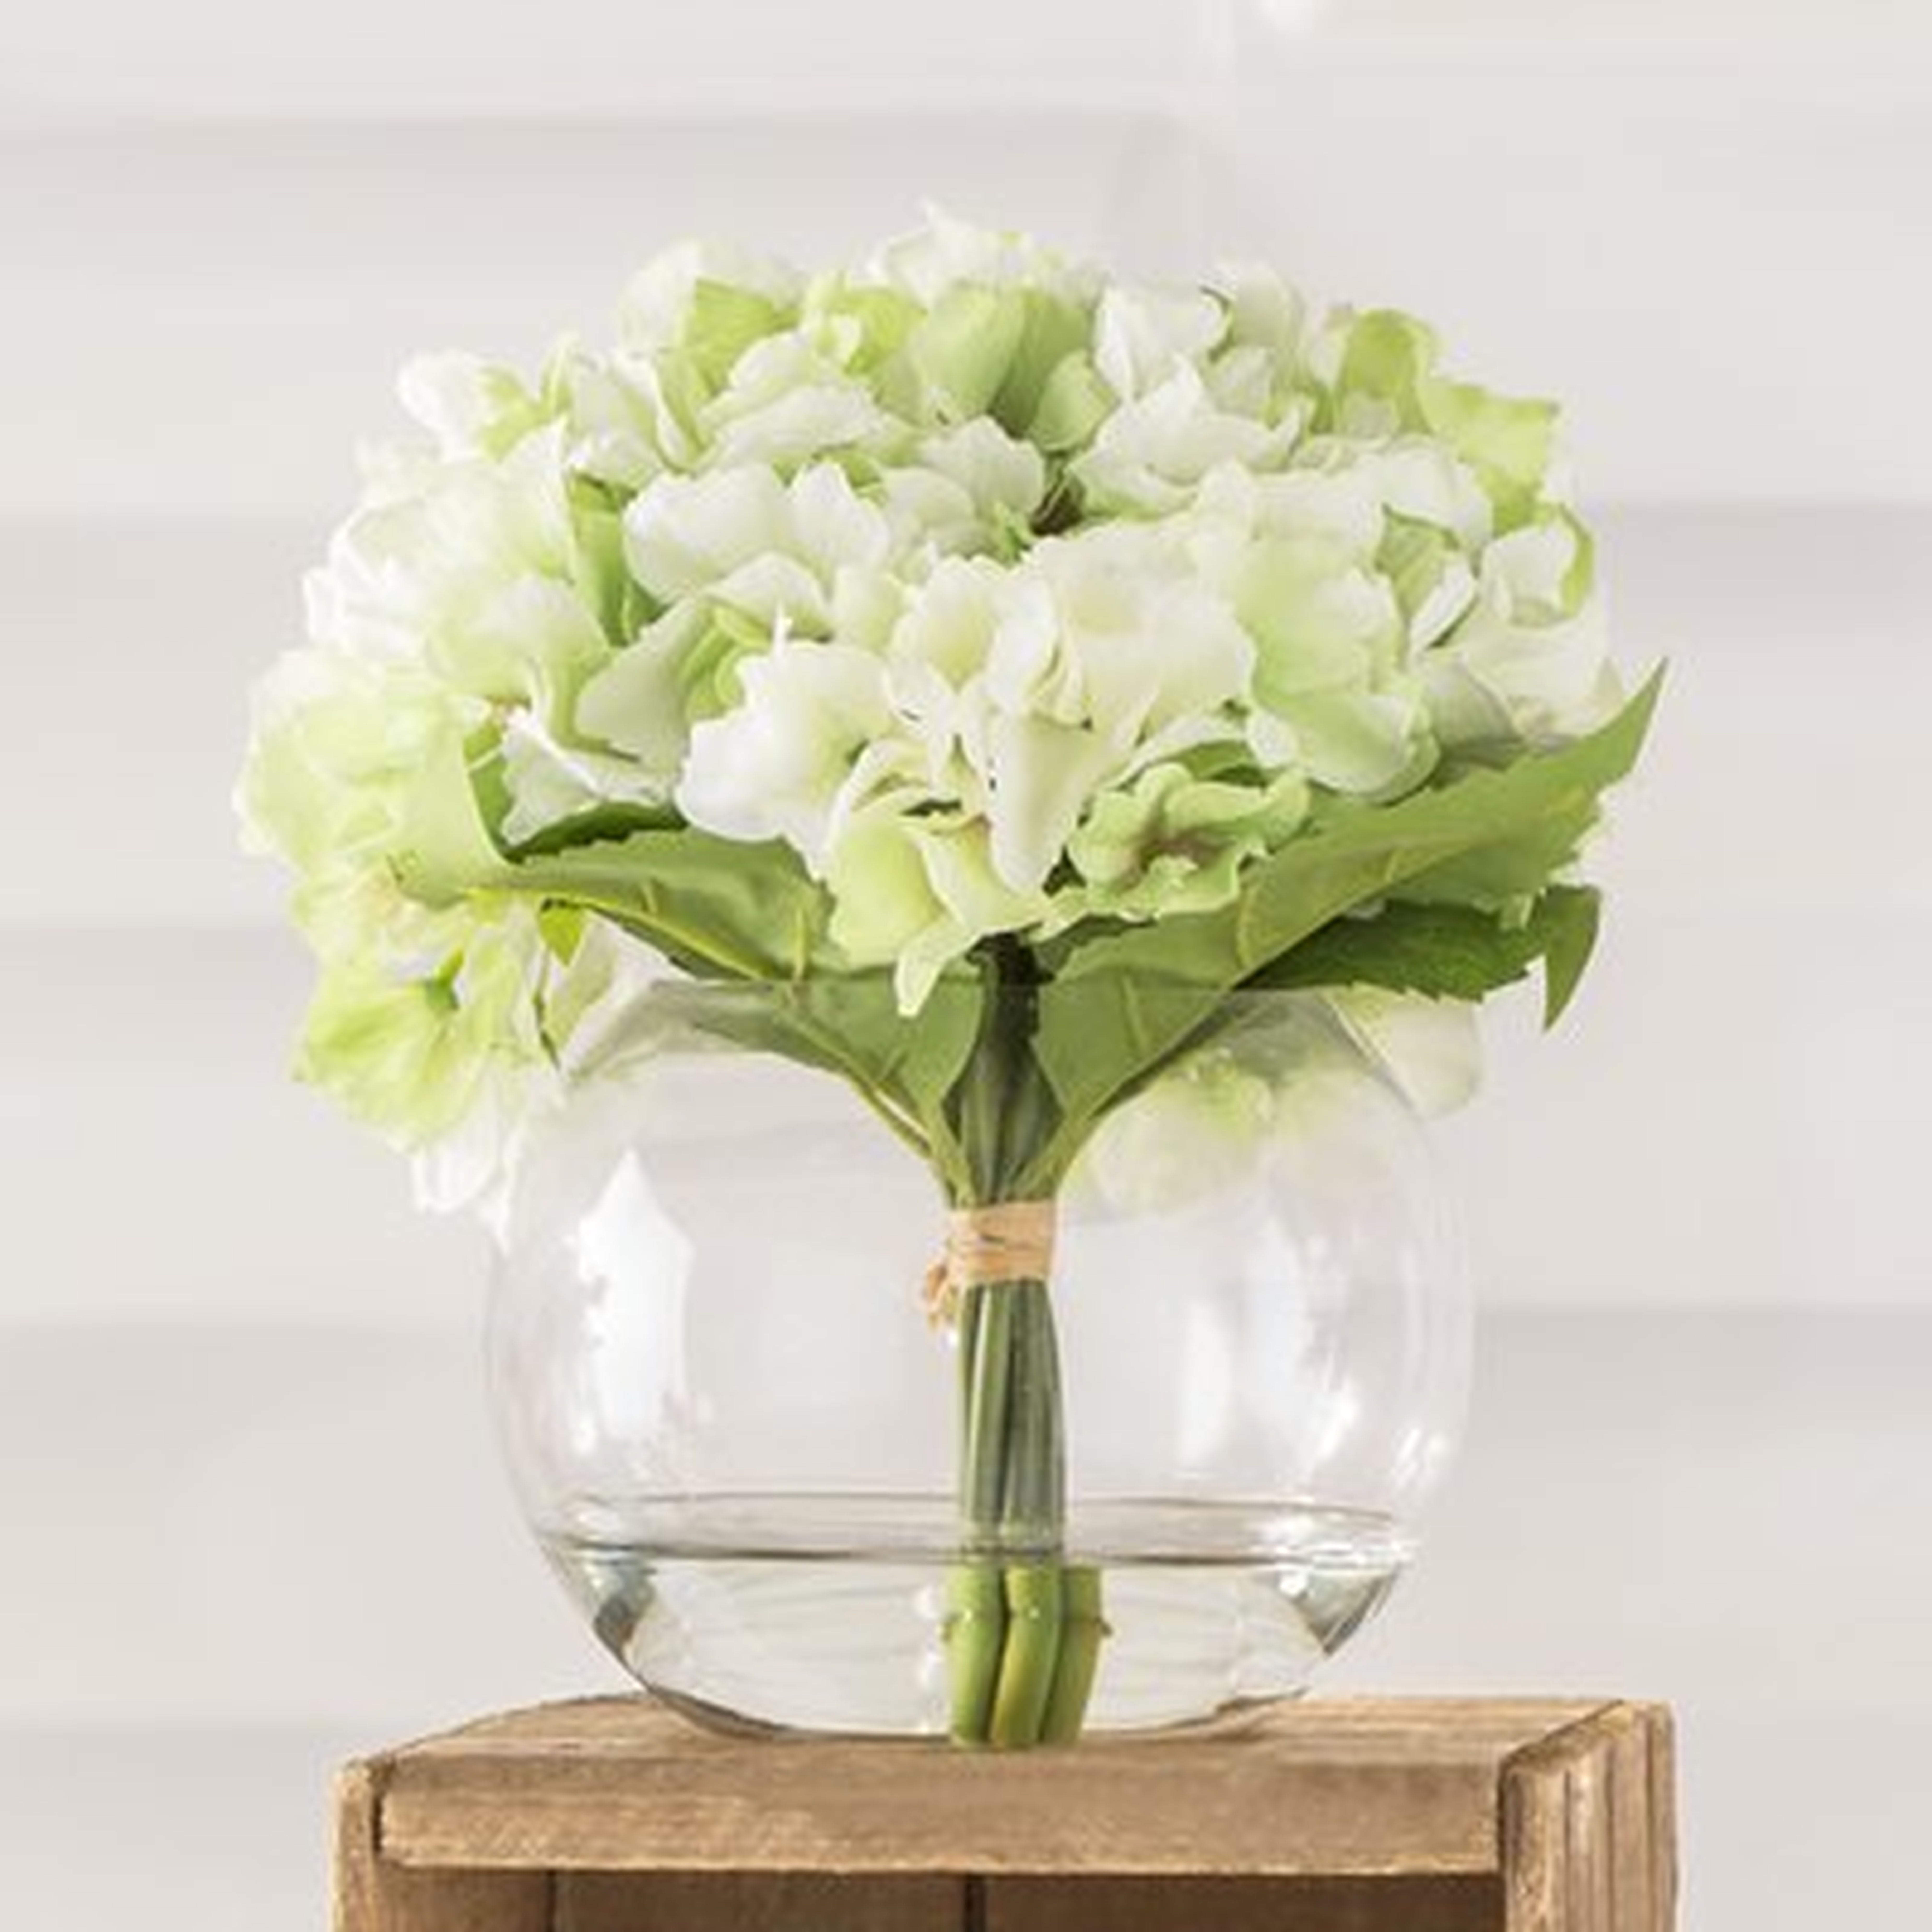 Hydrangea Floral Arrangement in Glass Vase - Birch Lane